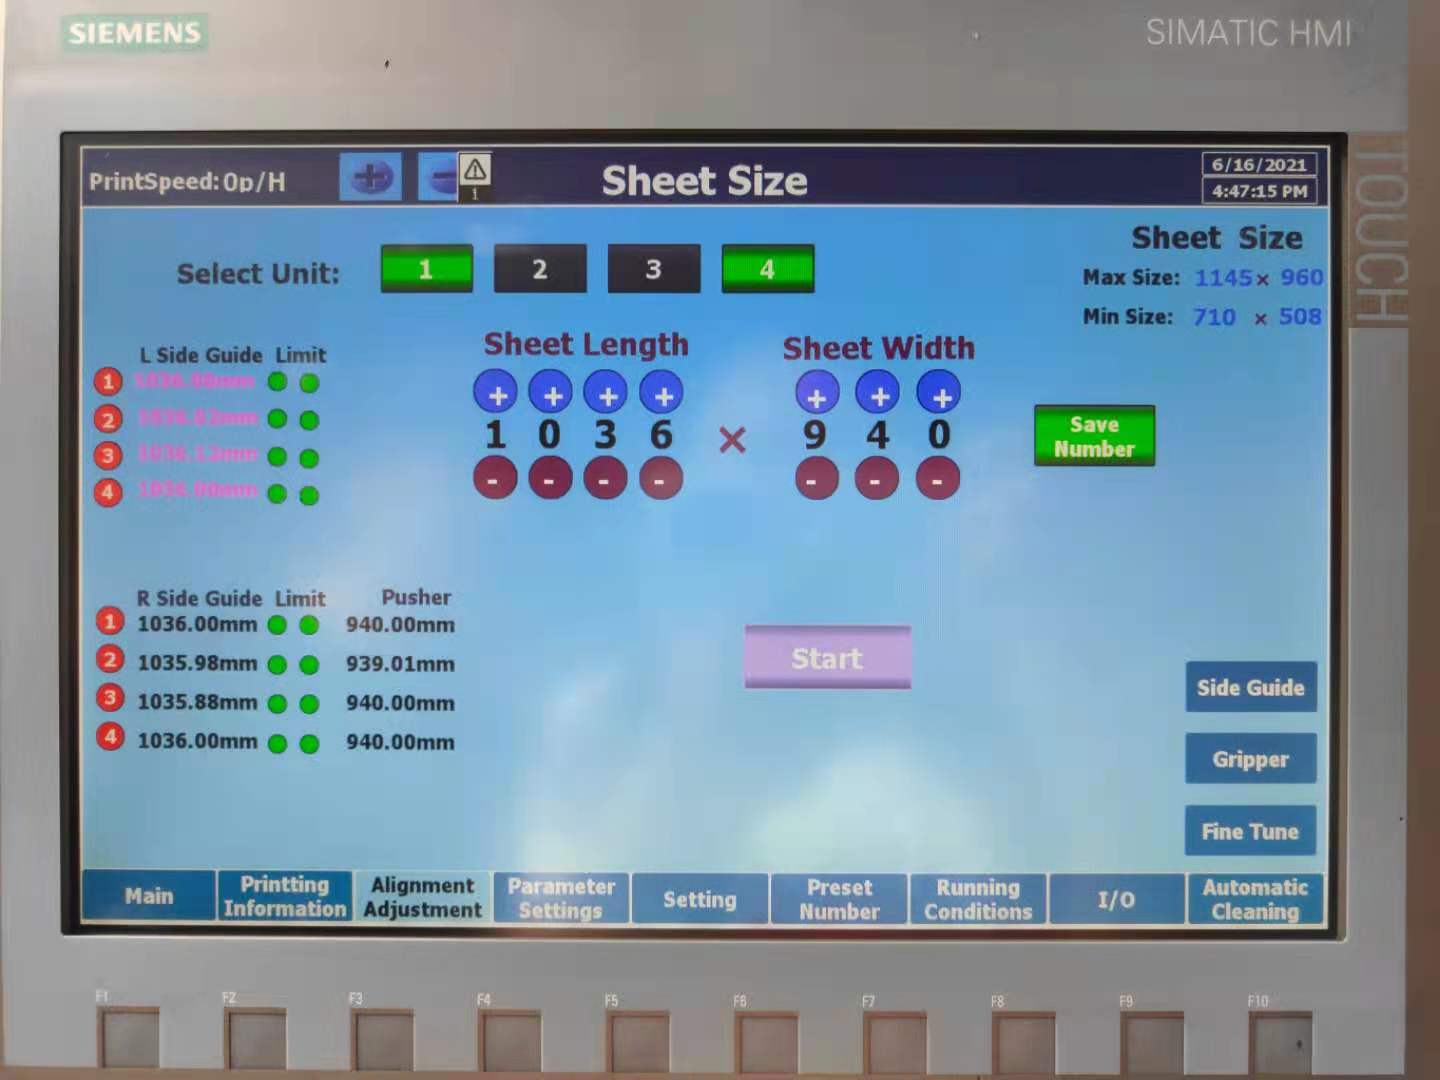 سیستم تغییر صفحۀ دیجیتال با یک دکمه برای فشار چاپ فلزیName